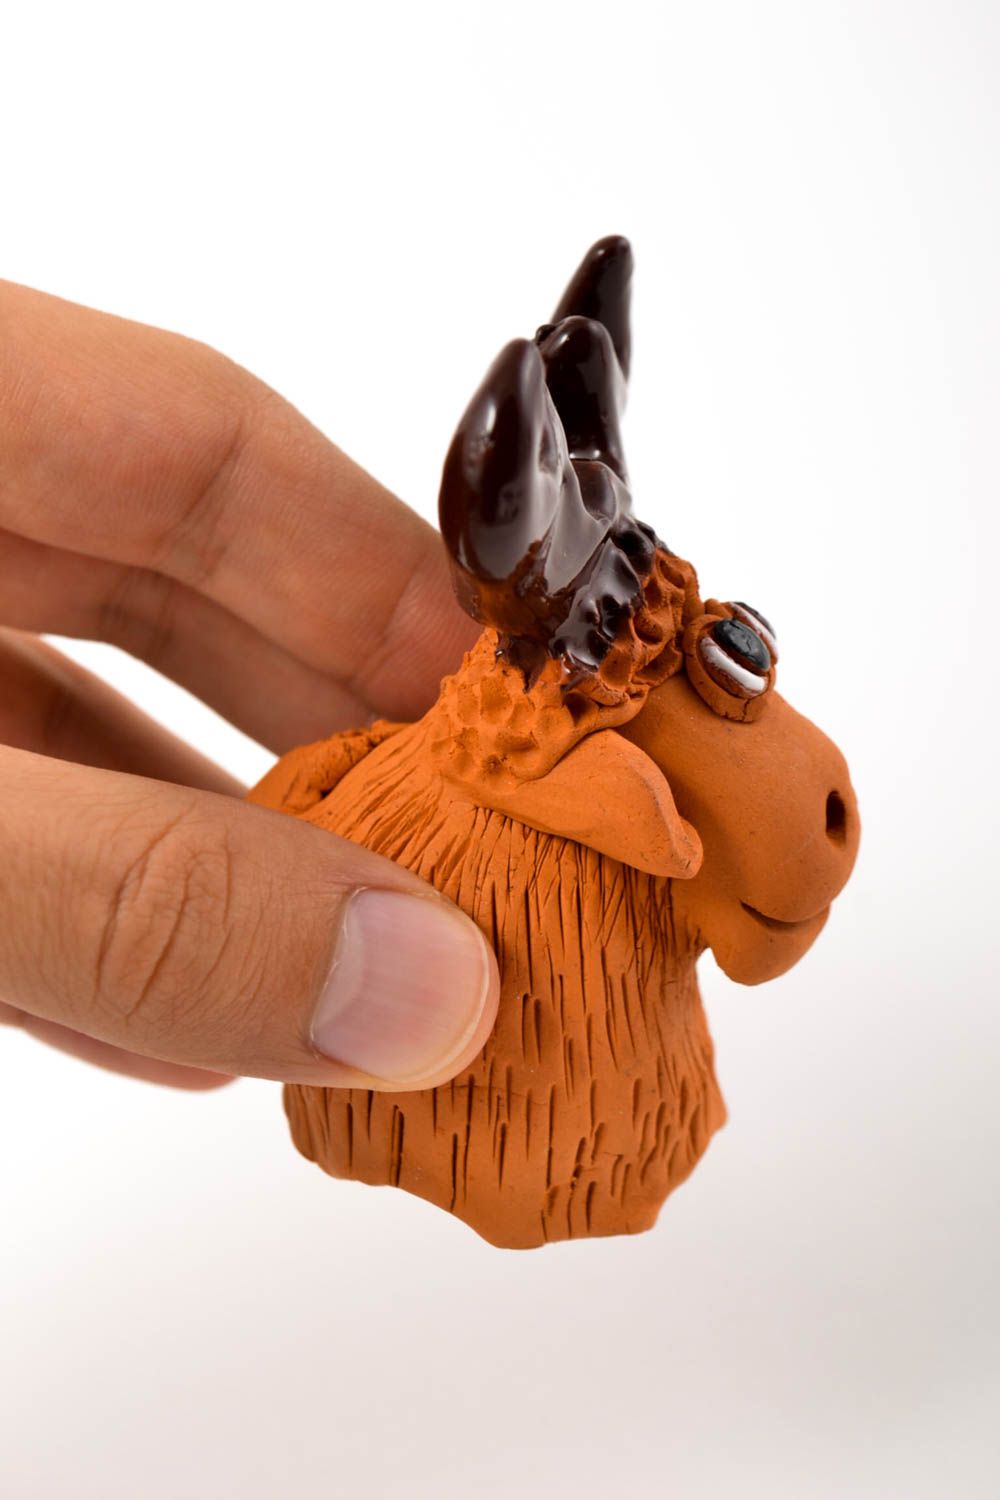 Фигурка животного статуэтка ручной работы игрушка из глины лось с рогами фото 3